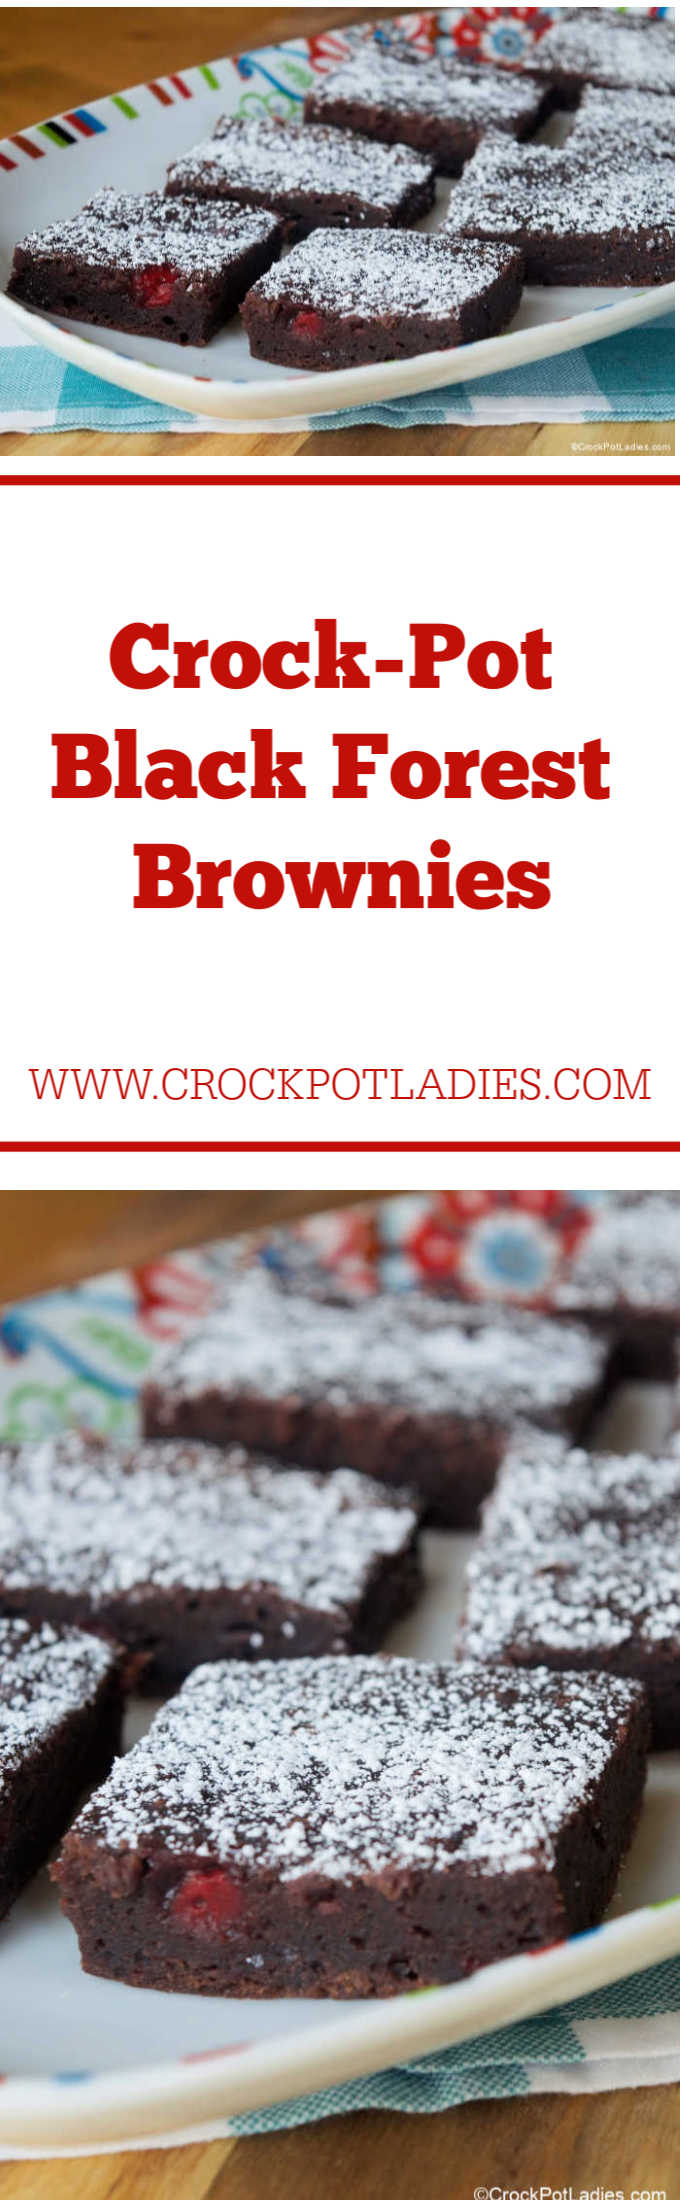 Crock-Pot Black Forest Brownies